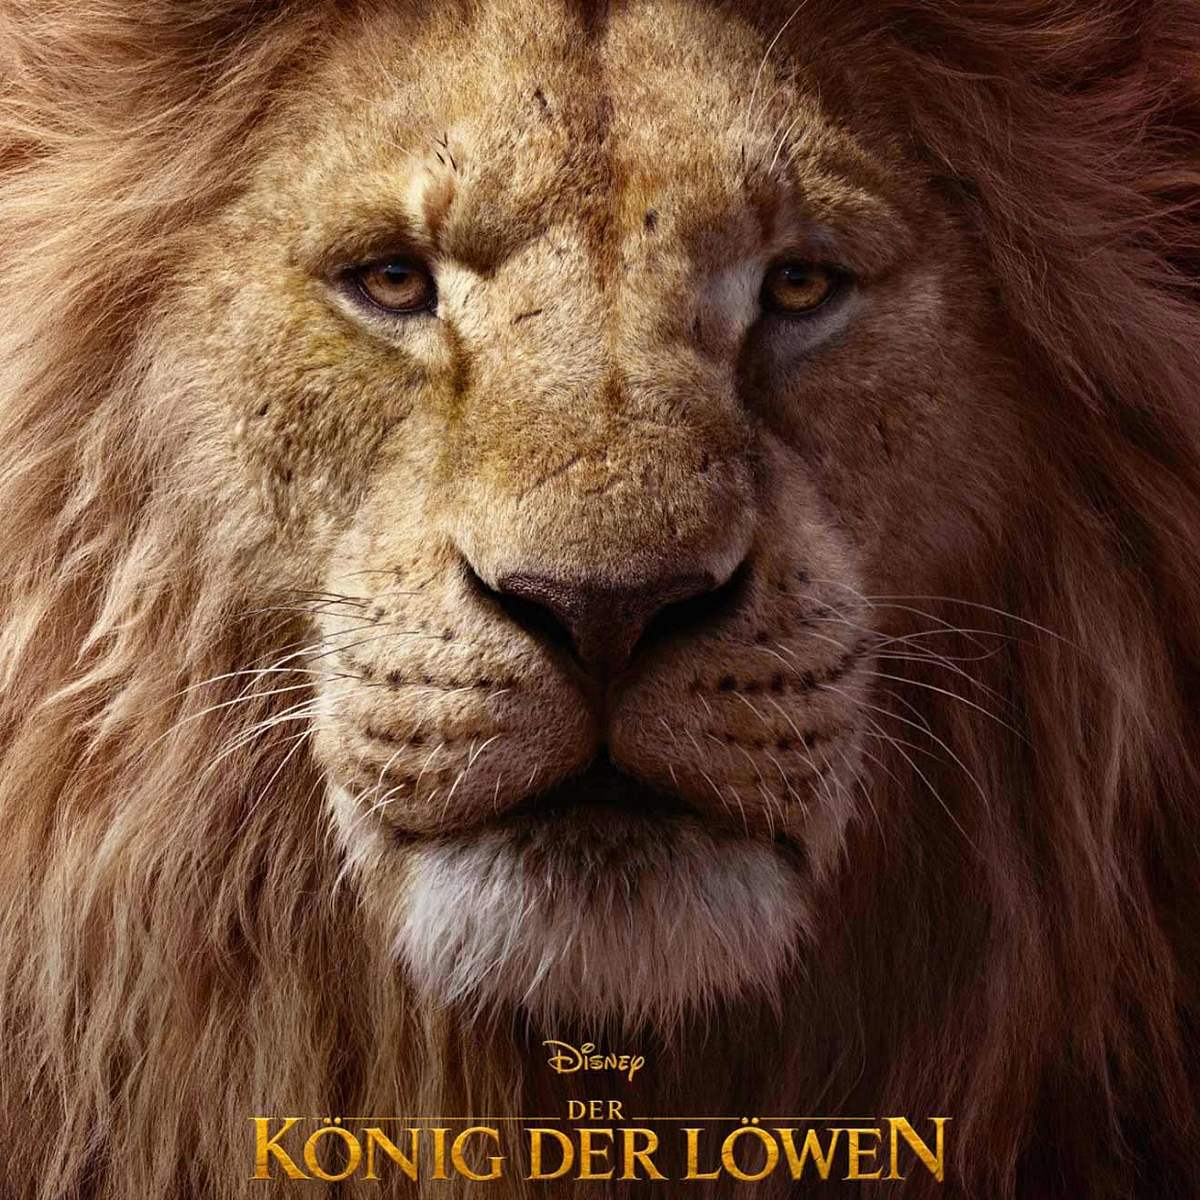 Disney+: Das sind die beliebtesten Serien und Filme! Der König der Löwen